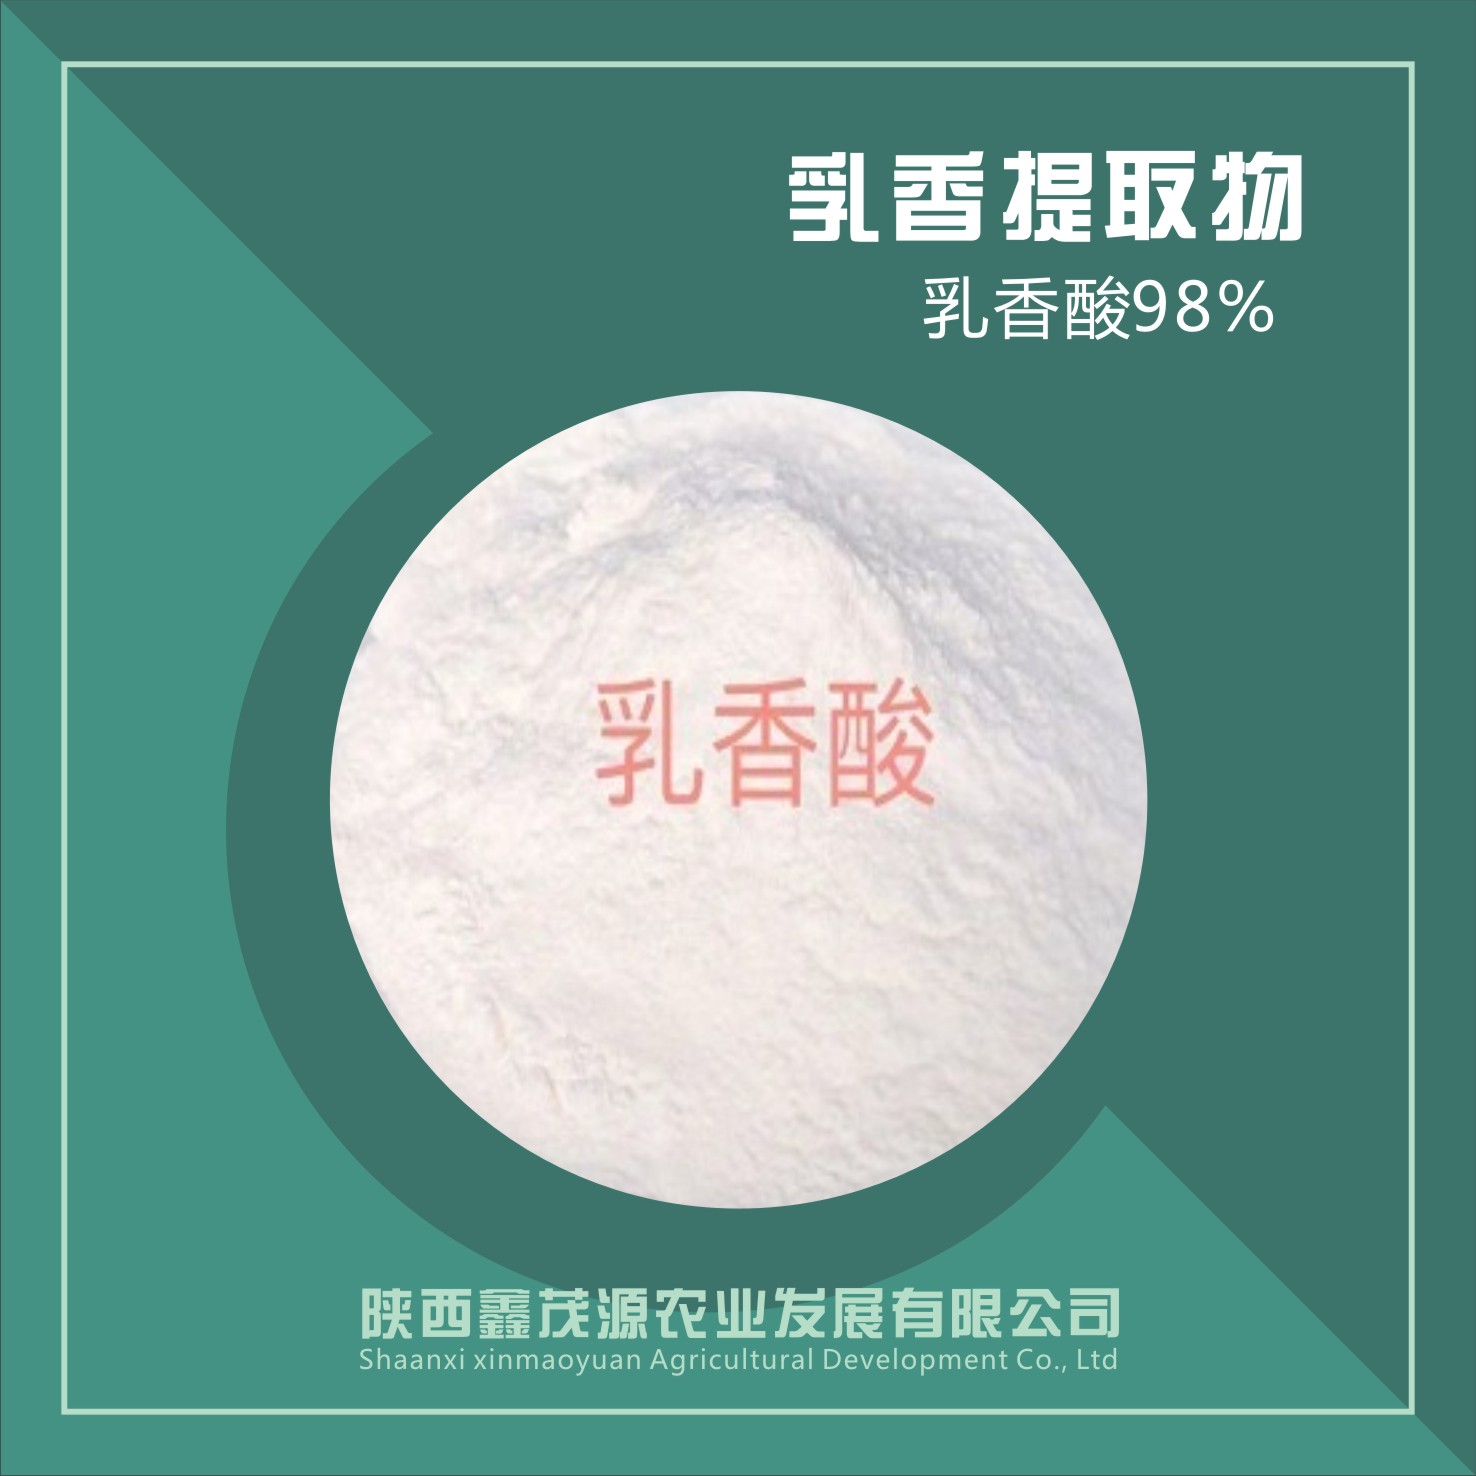 乳香提取物 / 乳香酸98%,Frankincense extract/frankincense acid 98%